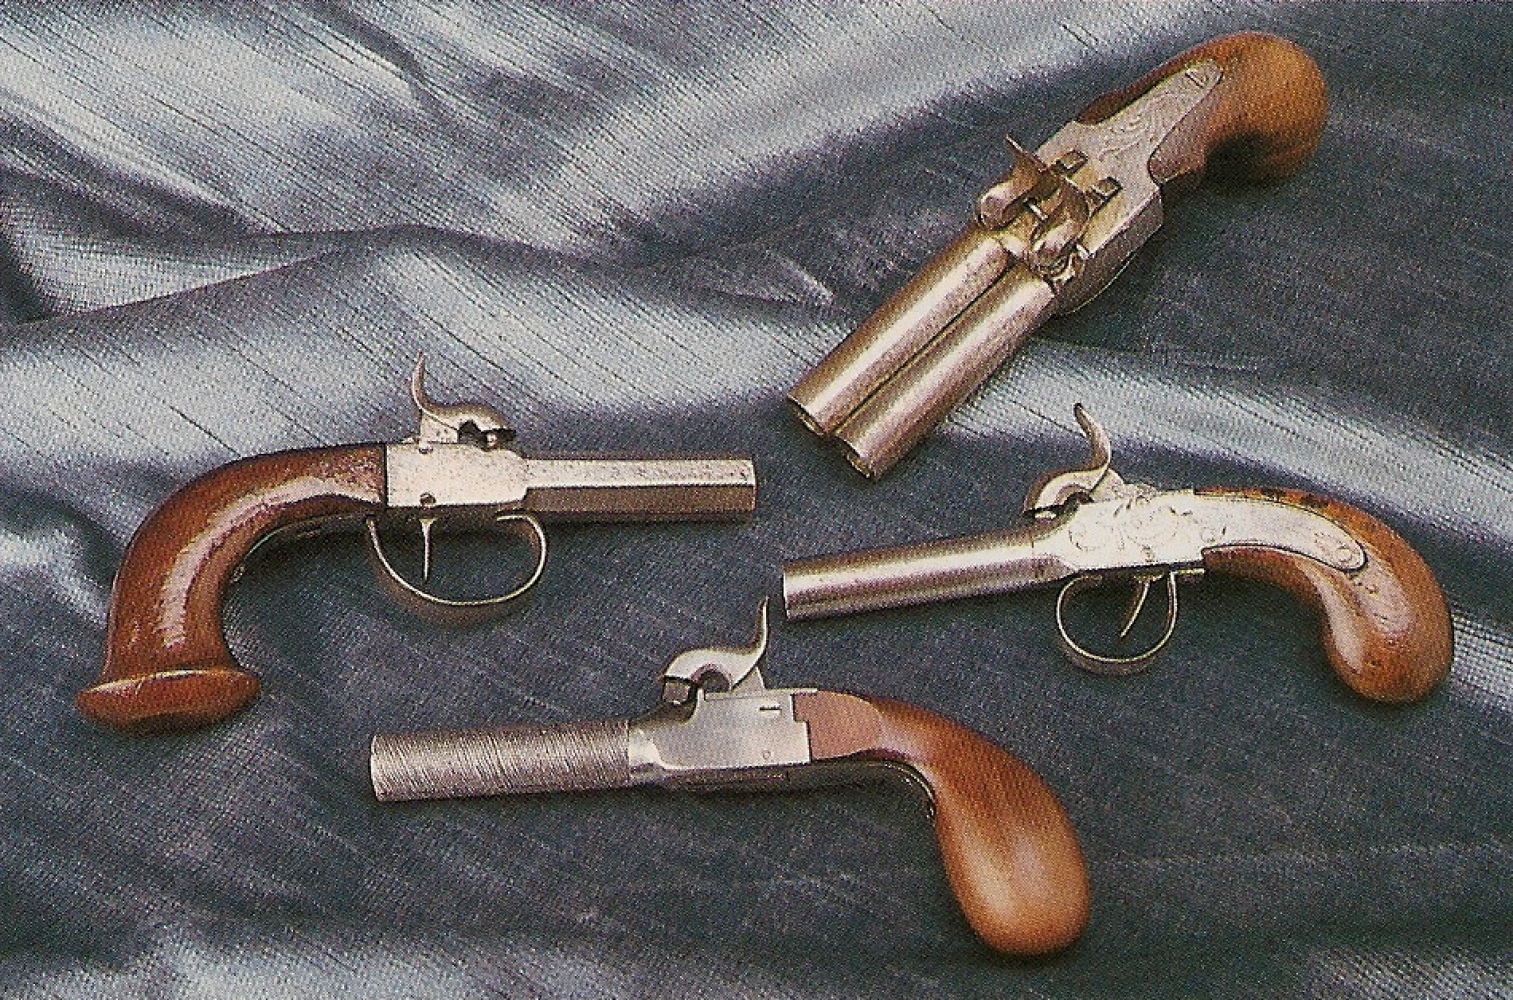 La réplique italienne est accompagnée ici par trois pistolets de poche anciens authentiques. Ces petits pistolets à coffre connurent un grand succès, comme arme de défense, de 1820 à 1860 environ, avant de céder progressivement leur place aux revolvers.